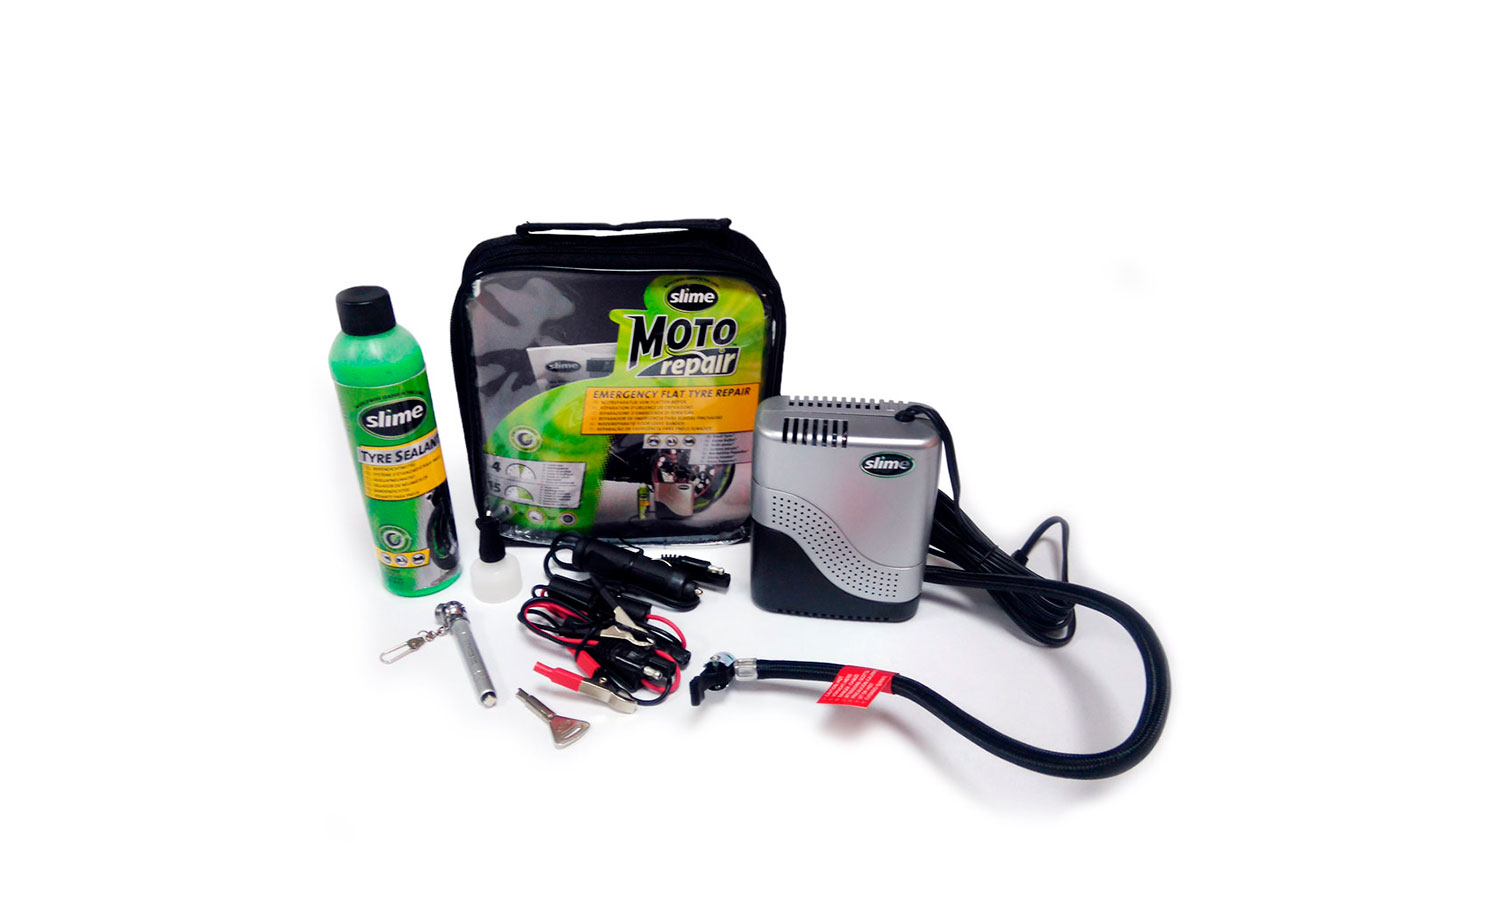 Фотография Ремкомплект для мотопокрышек MOTO Power Sport (Герметик + воздушный компрессор), Slime